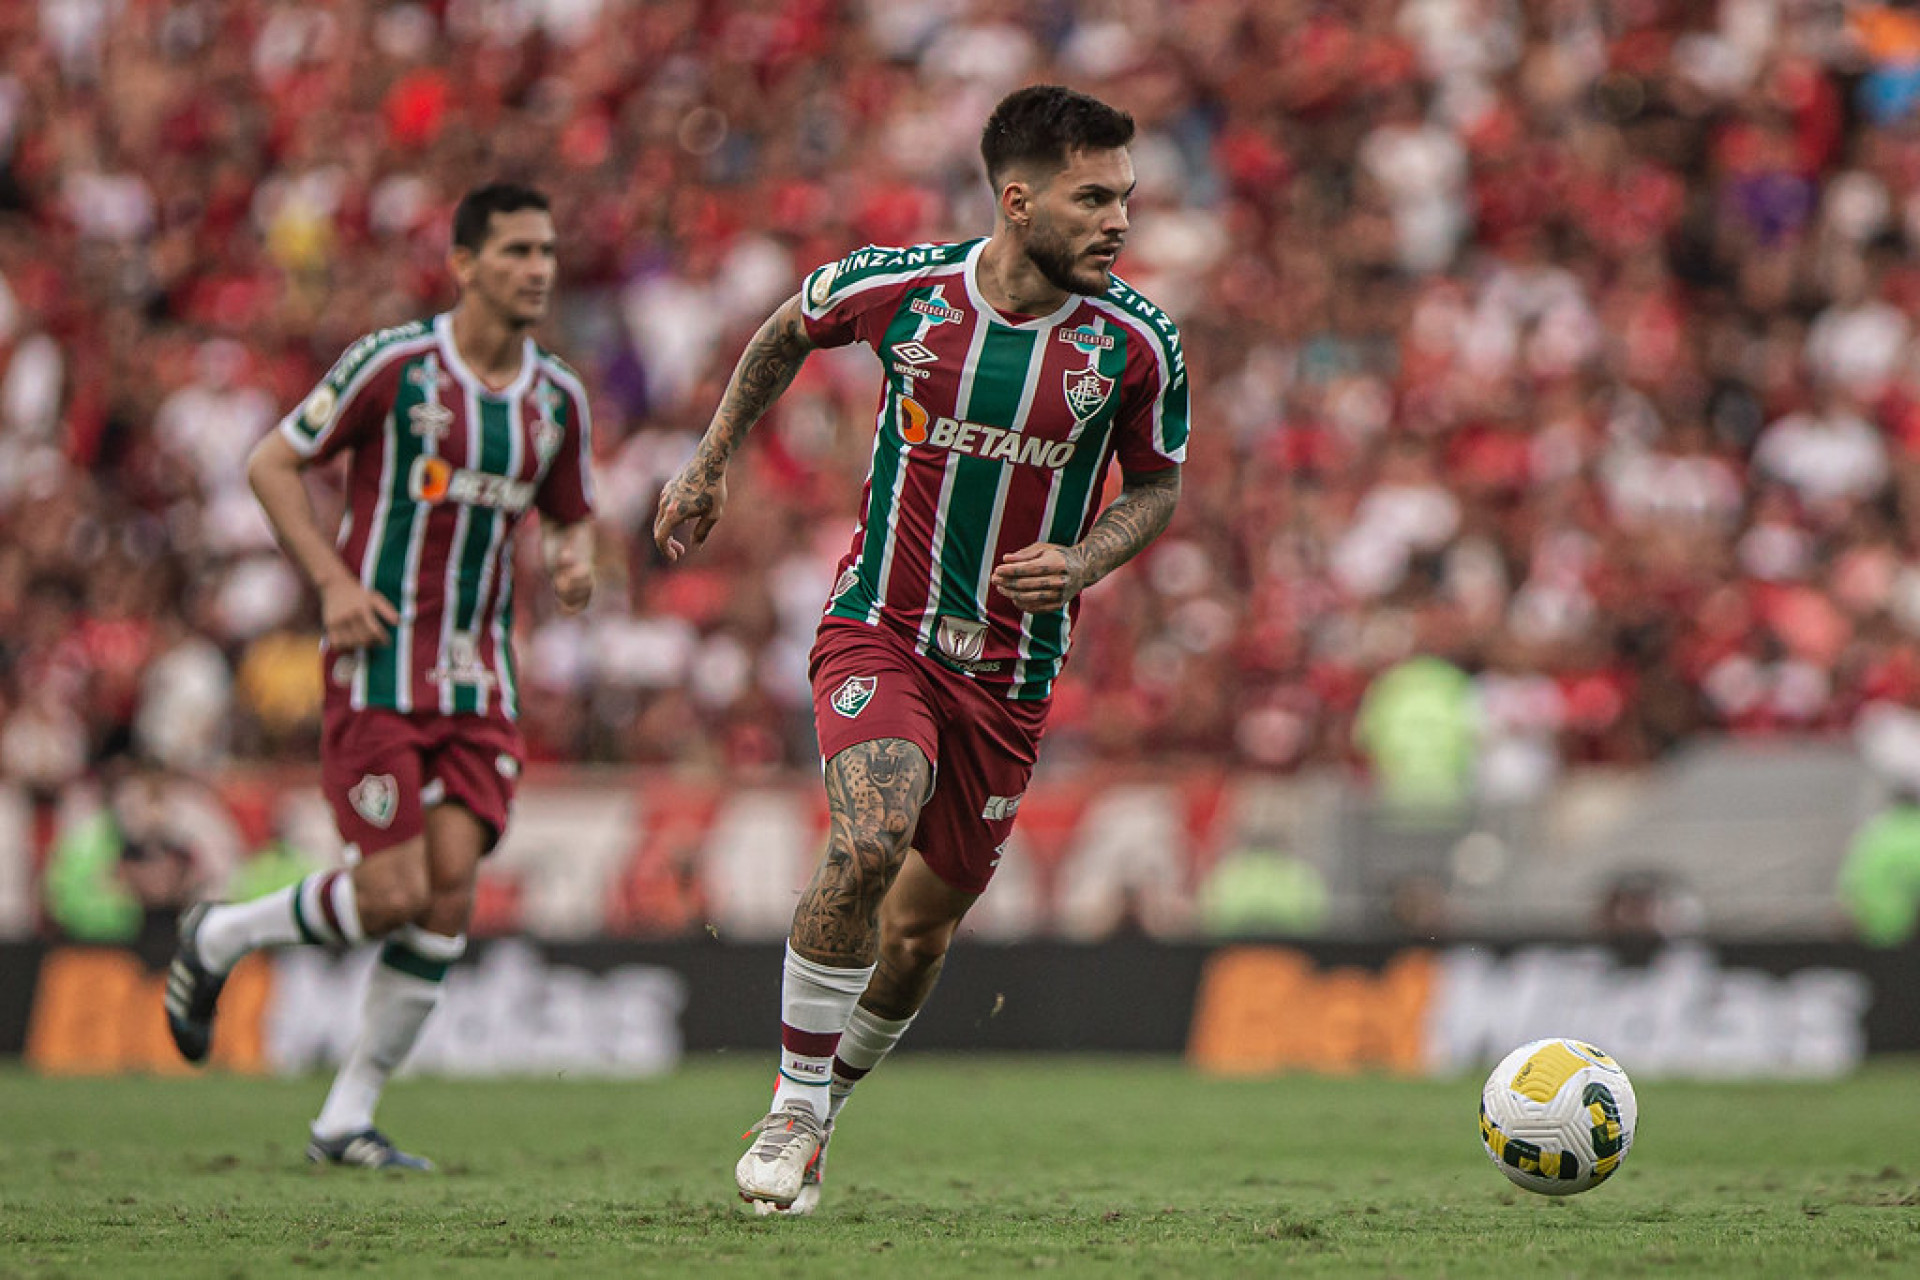 Nathan defendeu o Fluminense em 2022 - Marcelo Gonçalves / Fluminense